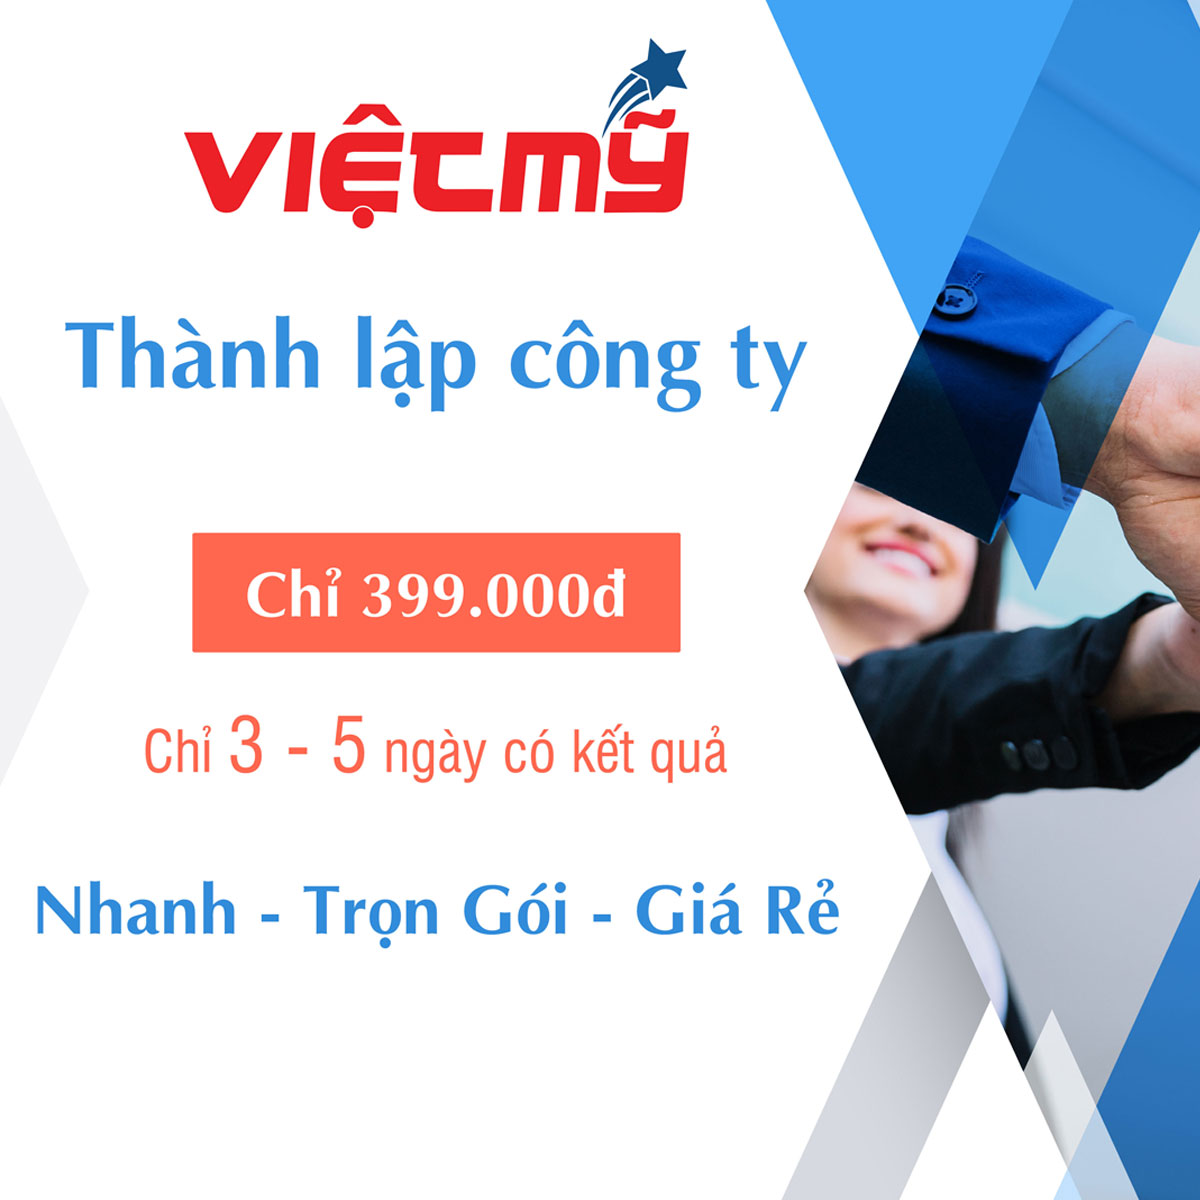 Mở công ty riêng nhanh trọn gói tại Hà Nội